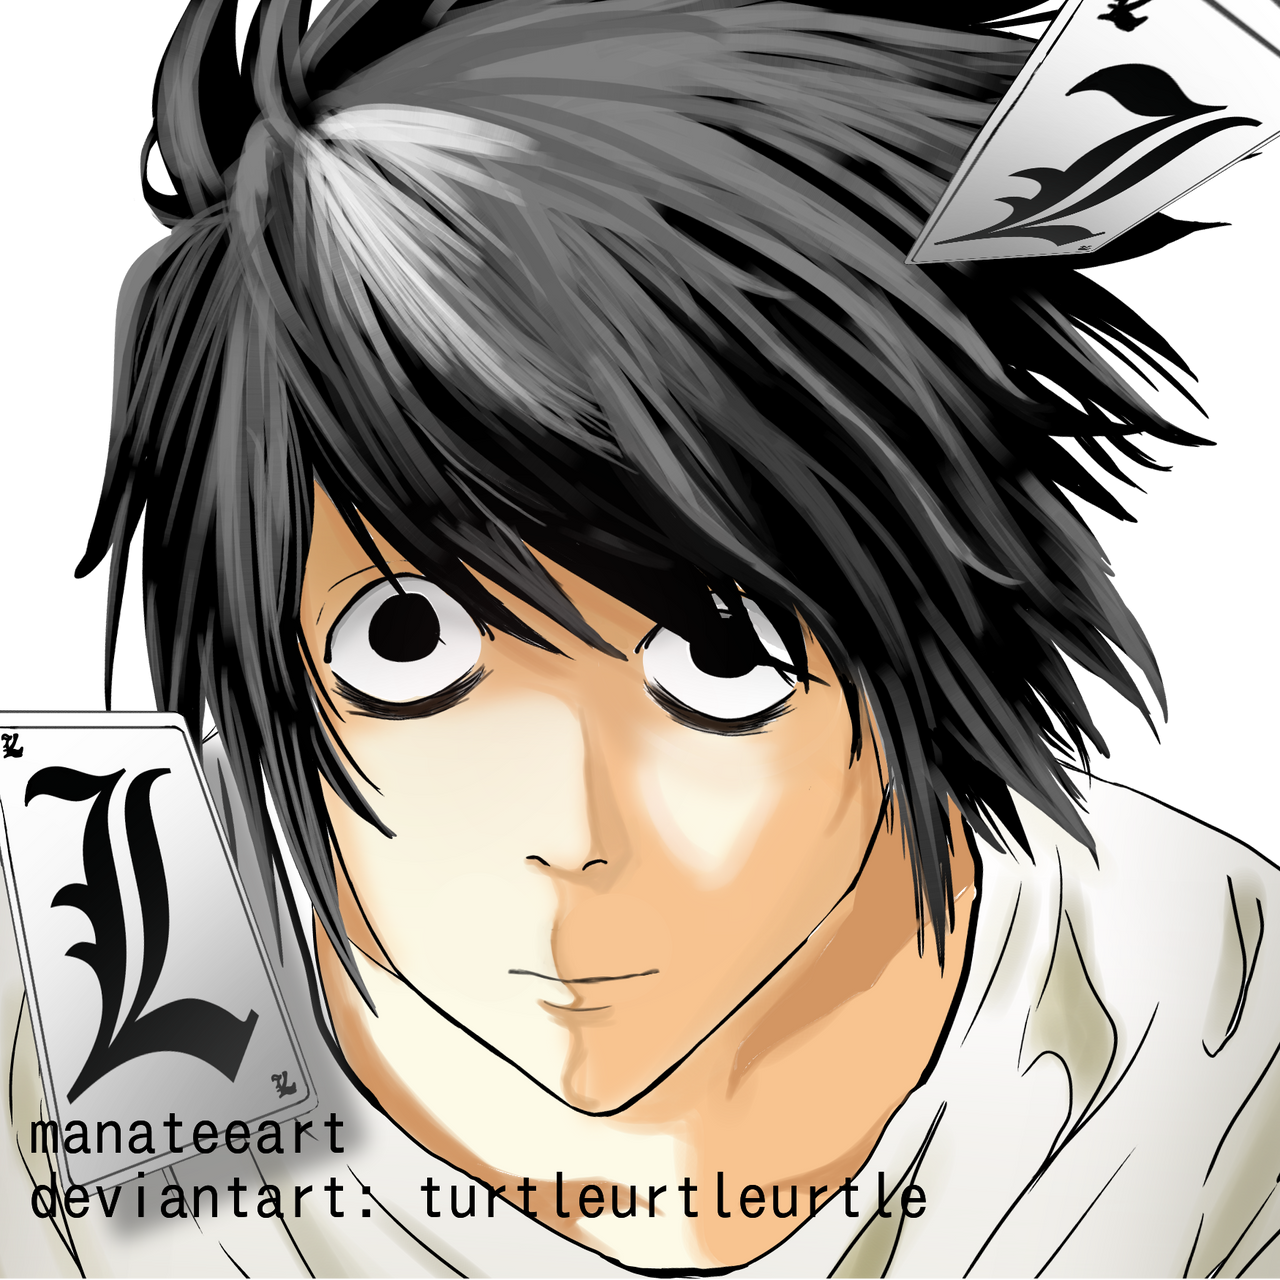 L Lawliet (Ryuzaki) Death Note Fan Art by mozzistudios on DeviantArt